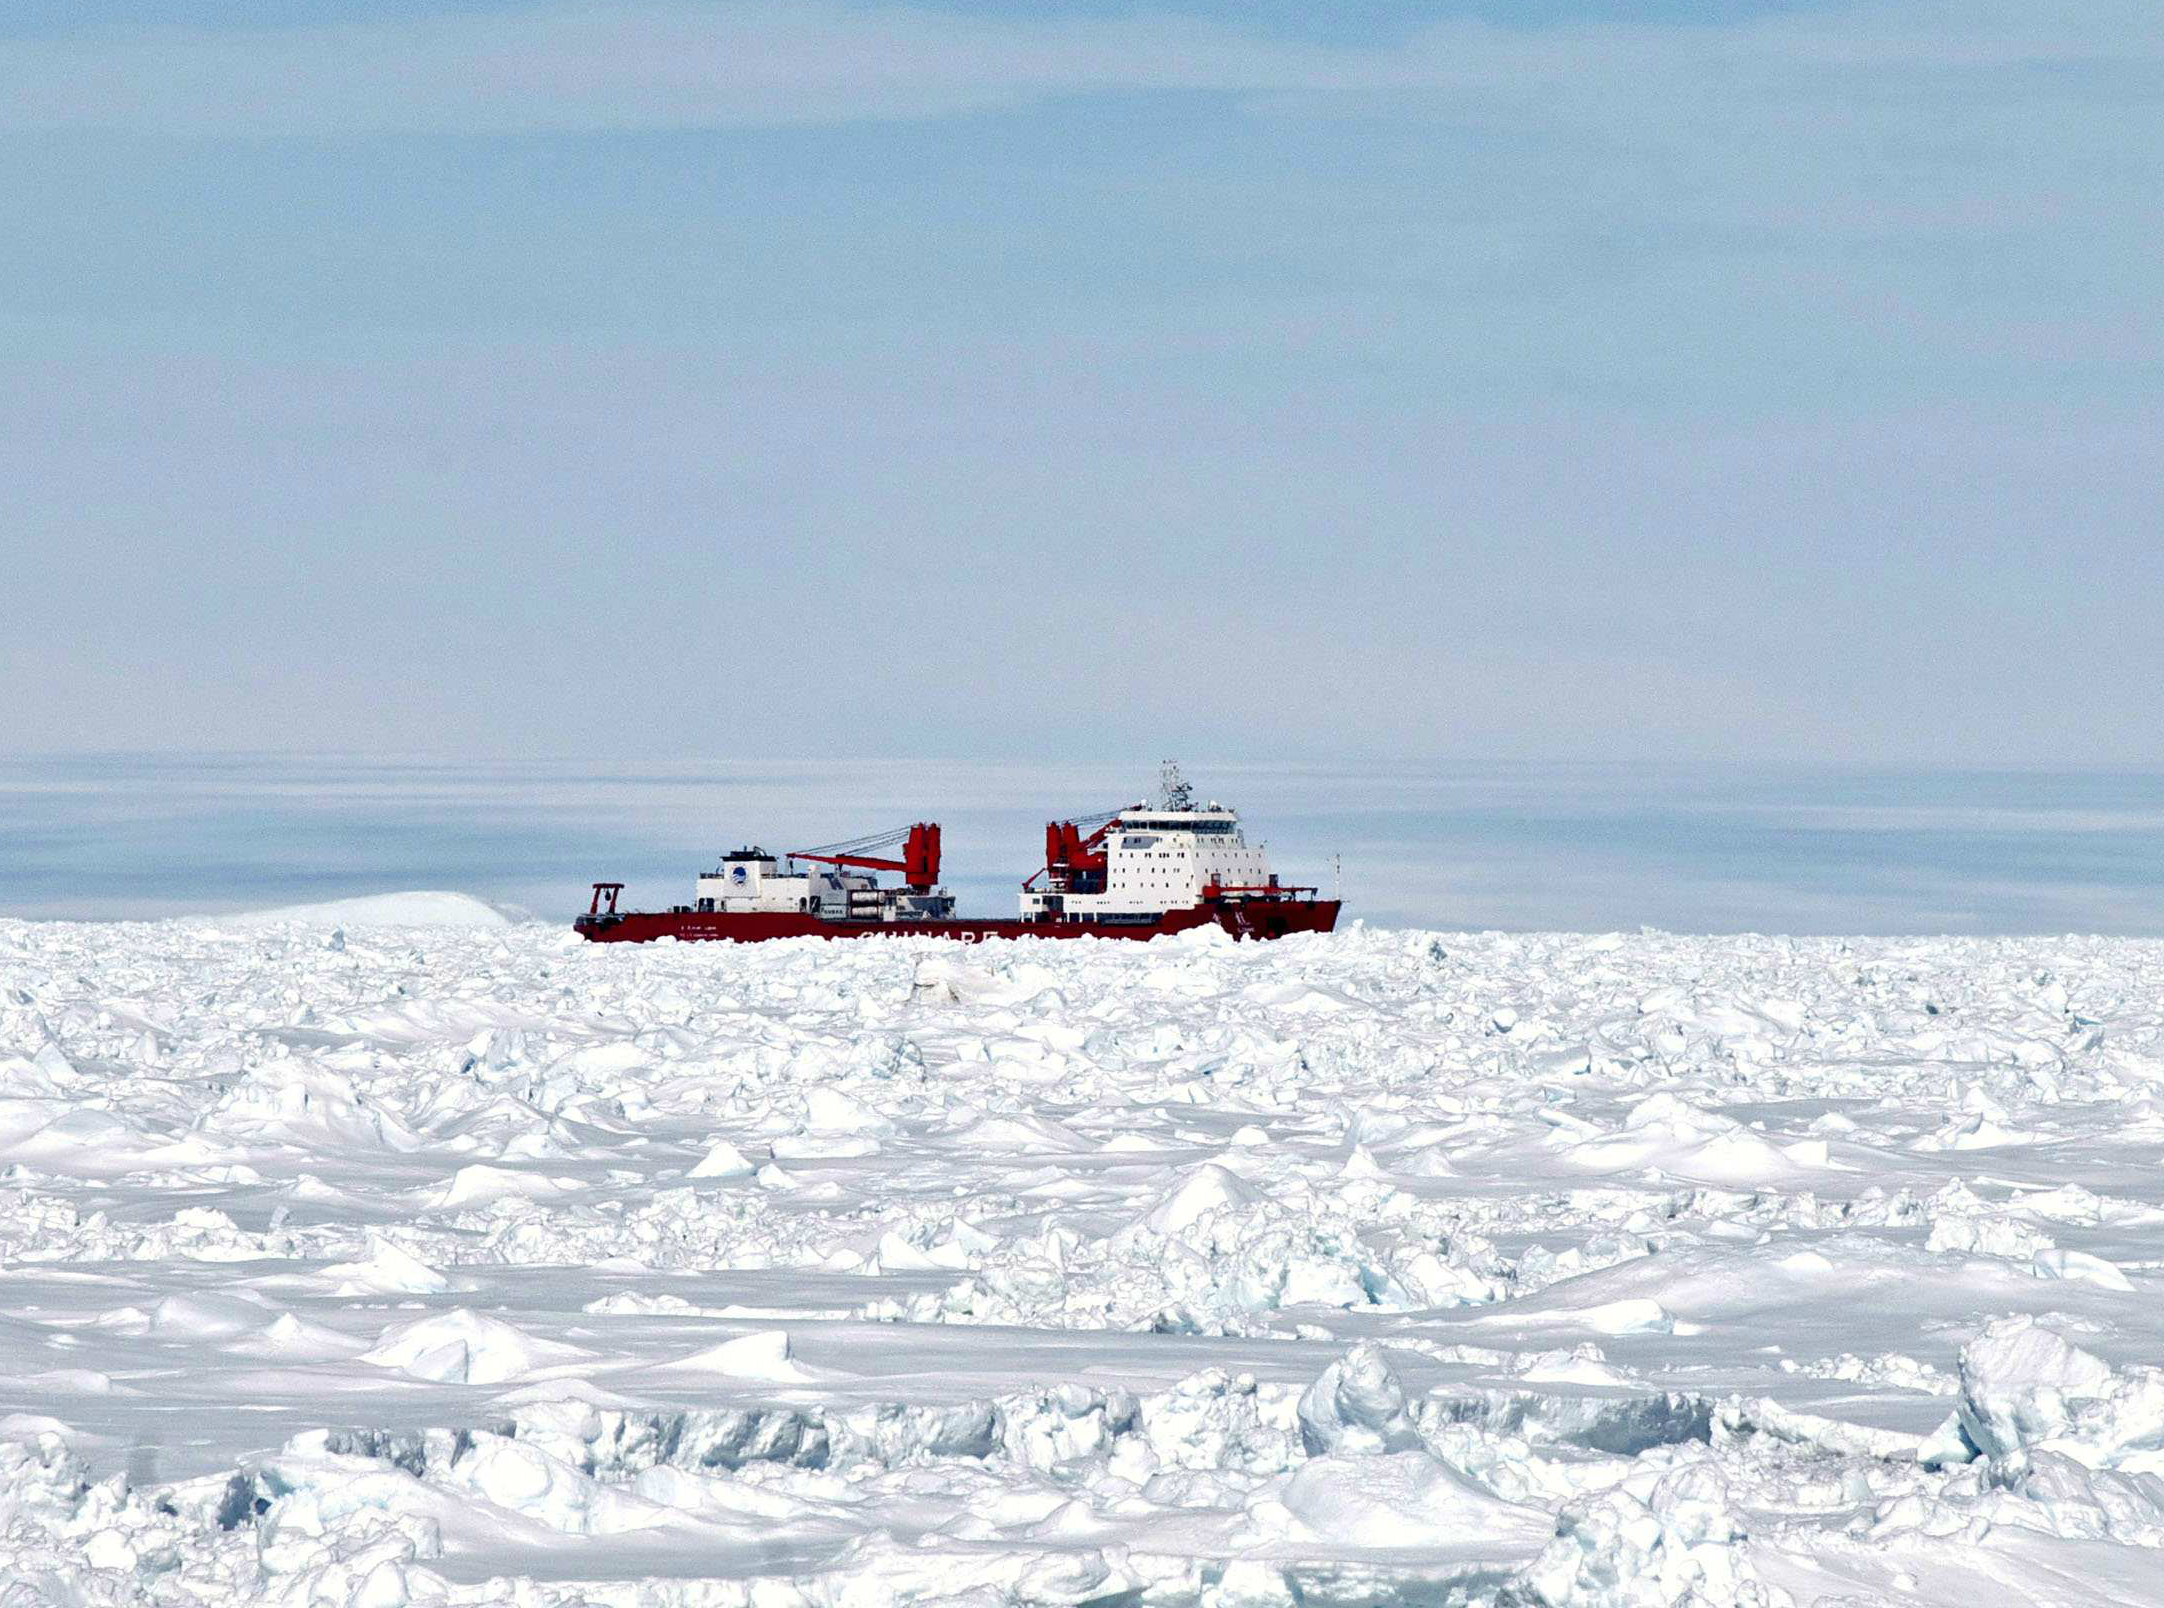 Τέλος στο θρίλερ της Ανταρκτικής – Απεγκλωβίστηκε το κινεζικό παγοθραυστικό